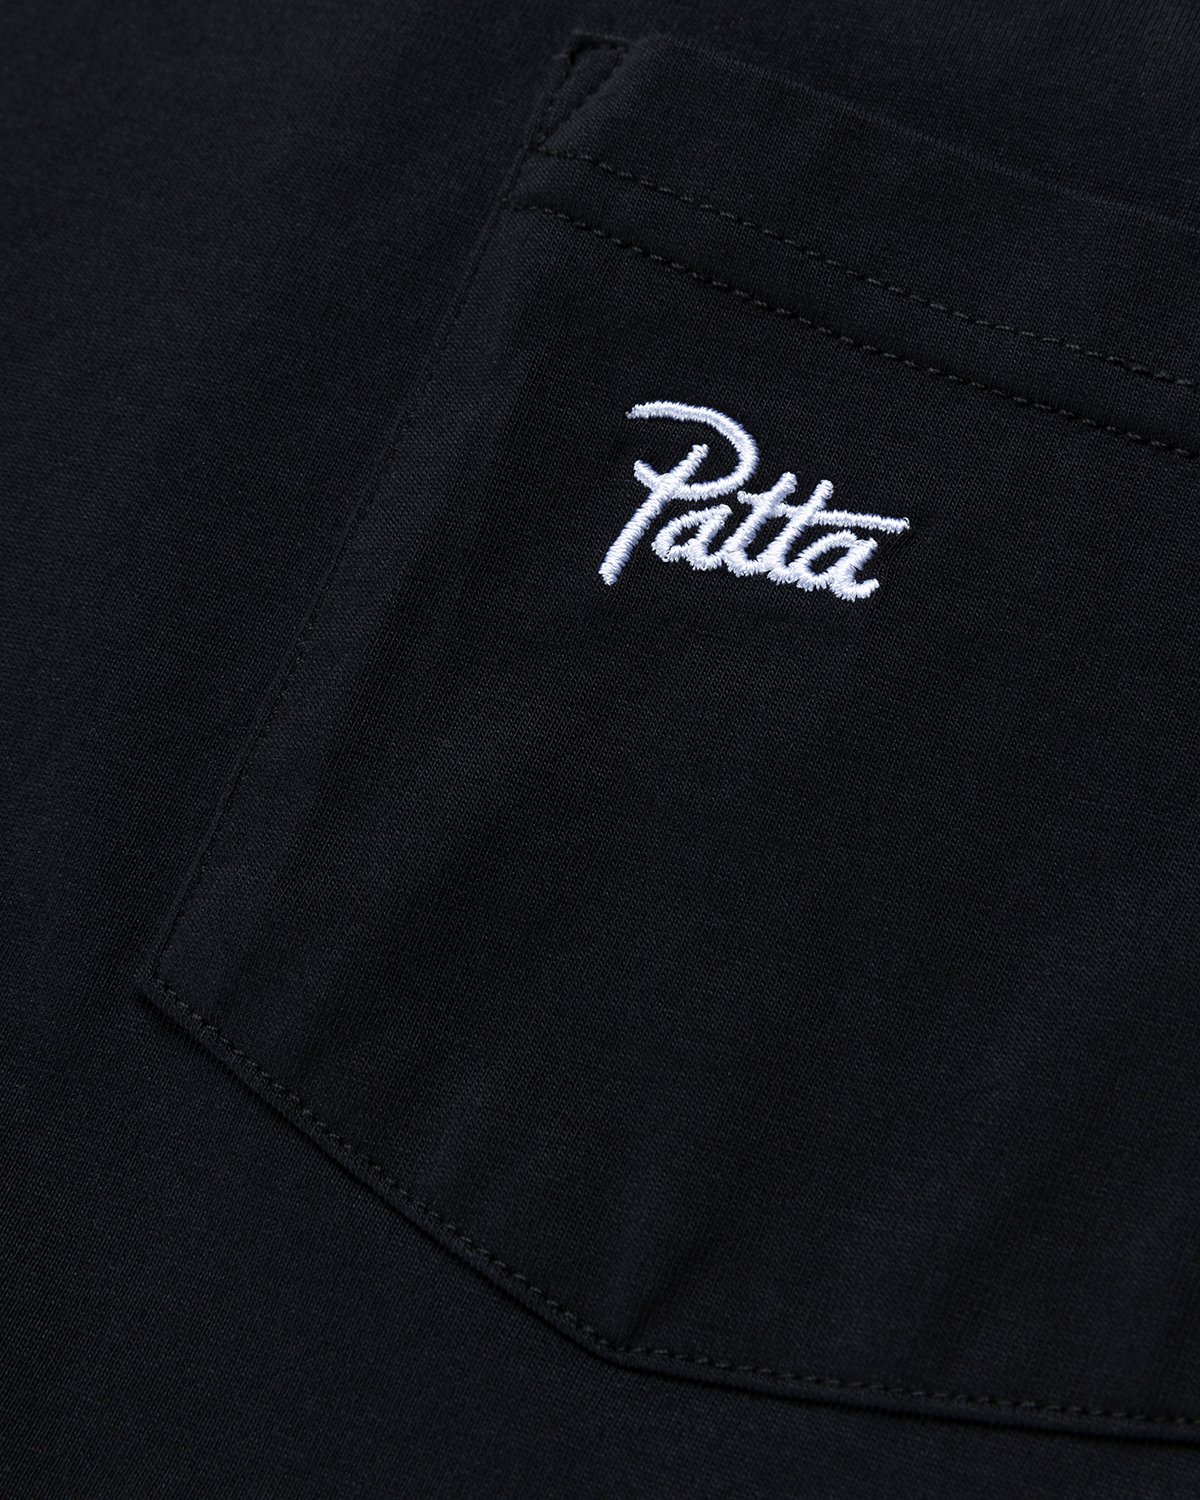 Patta - Basic Washed Pocket T-Shirt Black - Clothing - Black - Image 4